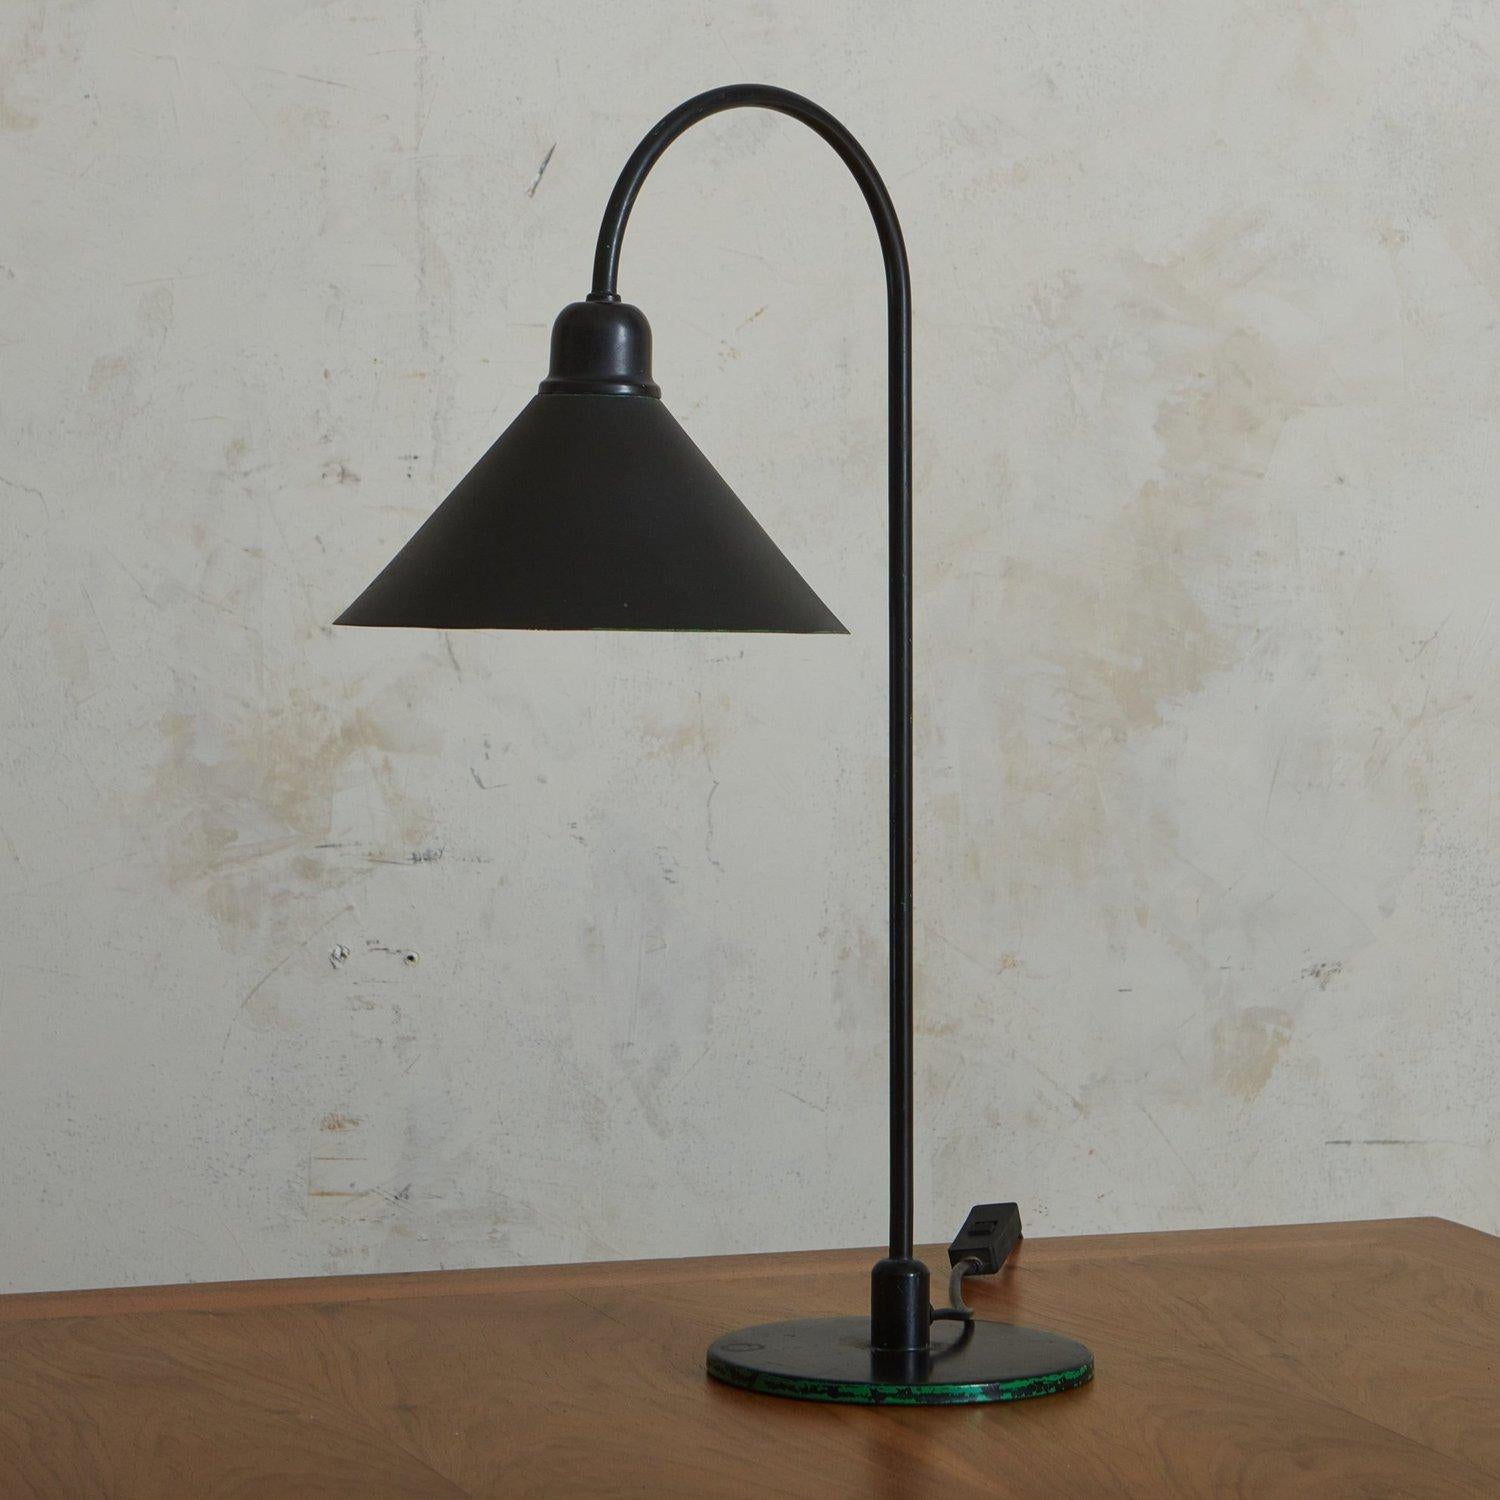 Lampe de bureau vintage en métal noir, avec un corps tubulaire incurvé, une base circulaire et un abat-jour épuré. Il est doté d'un cordon noir et d'un interrupteur en ligne. Source : France, 20e siècle.

DIAS : 6.5 